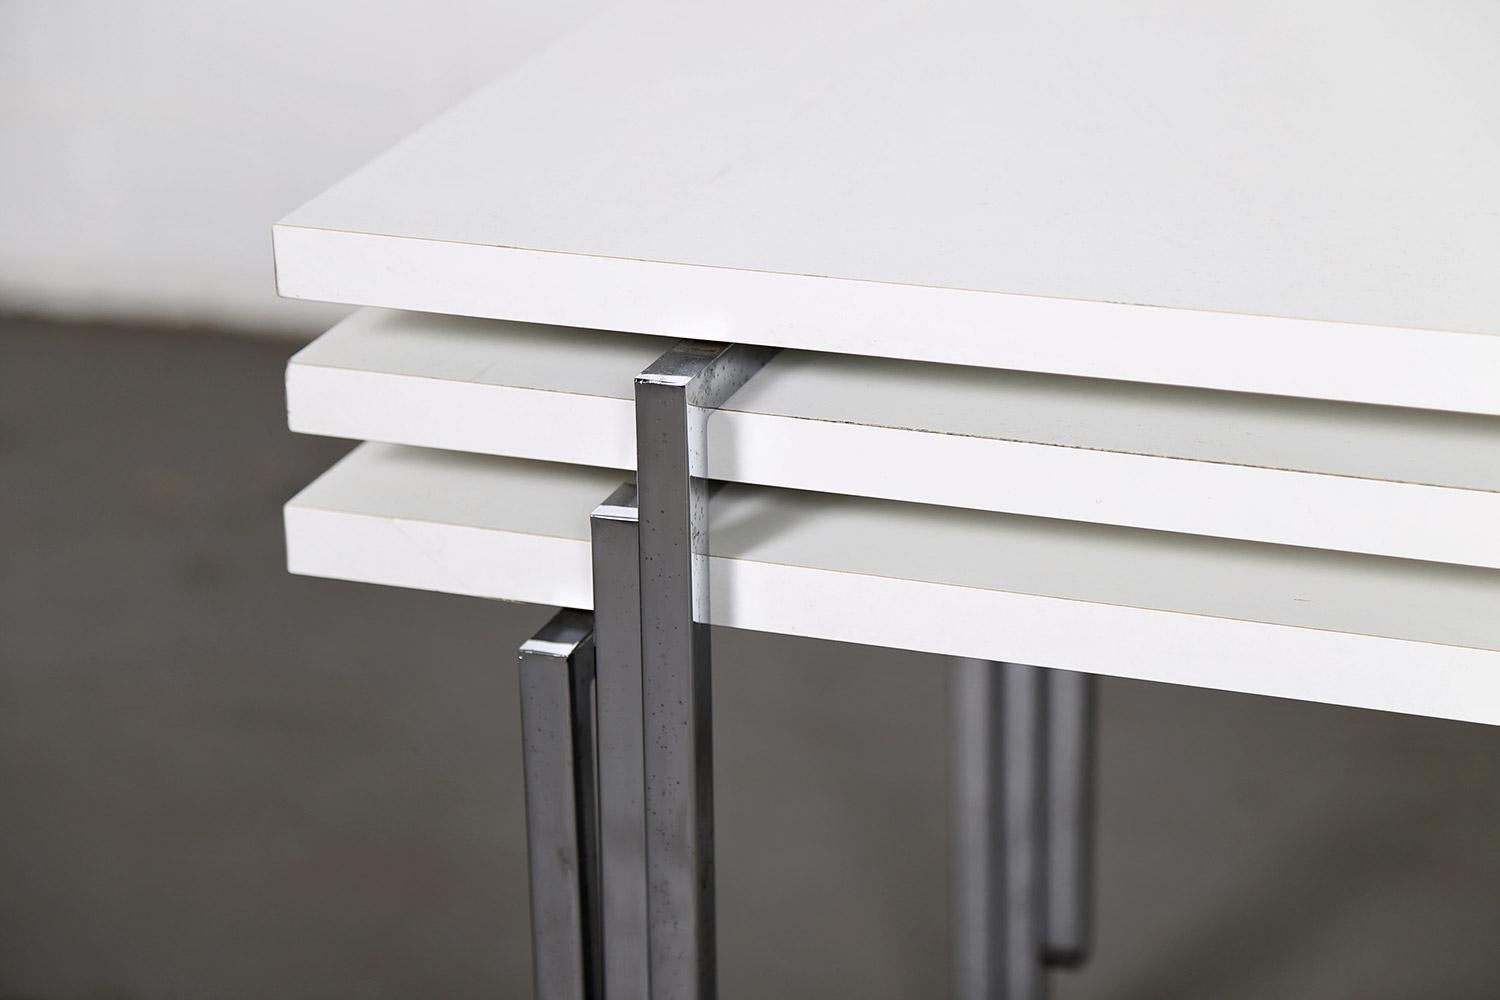 Trois tables empilables modernistes conçues par Trix et Robert Haussmann pour Swiss Form dans les années 60.